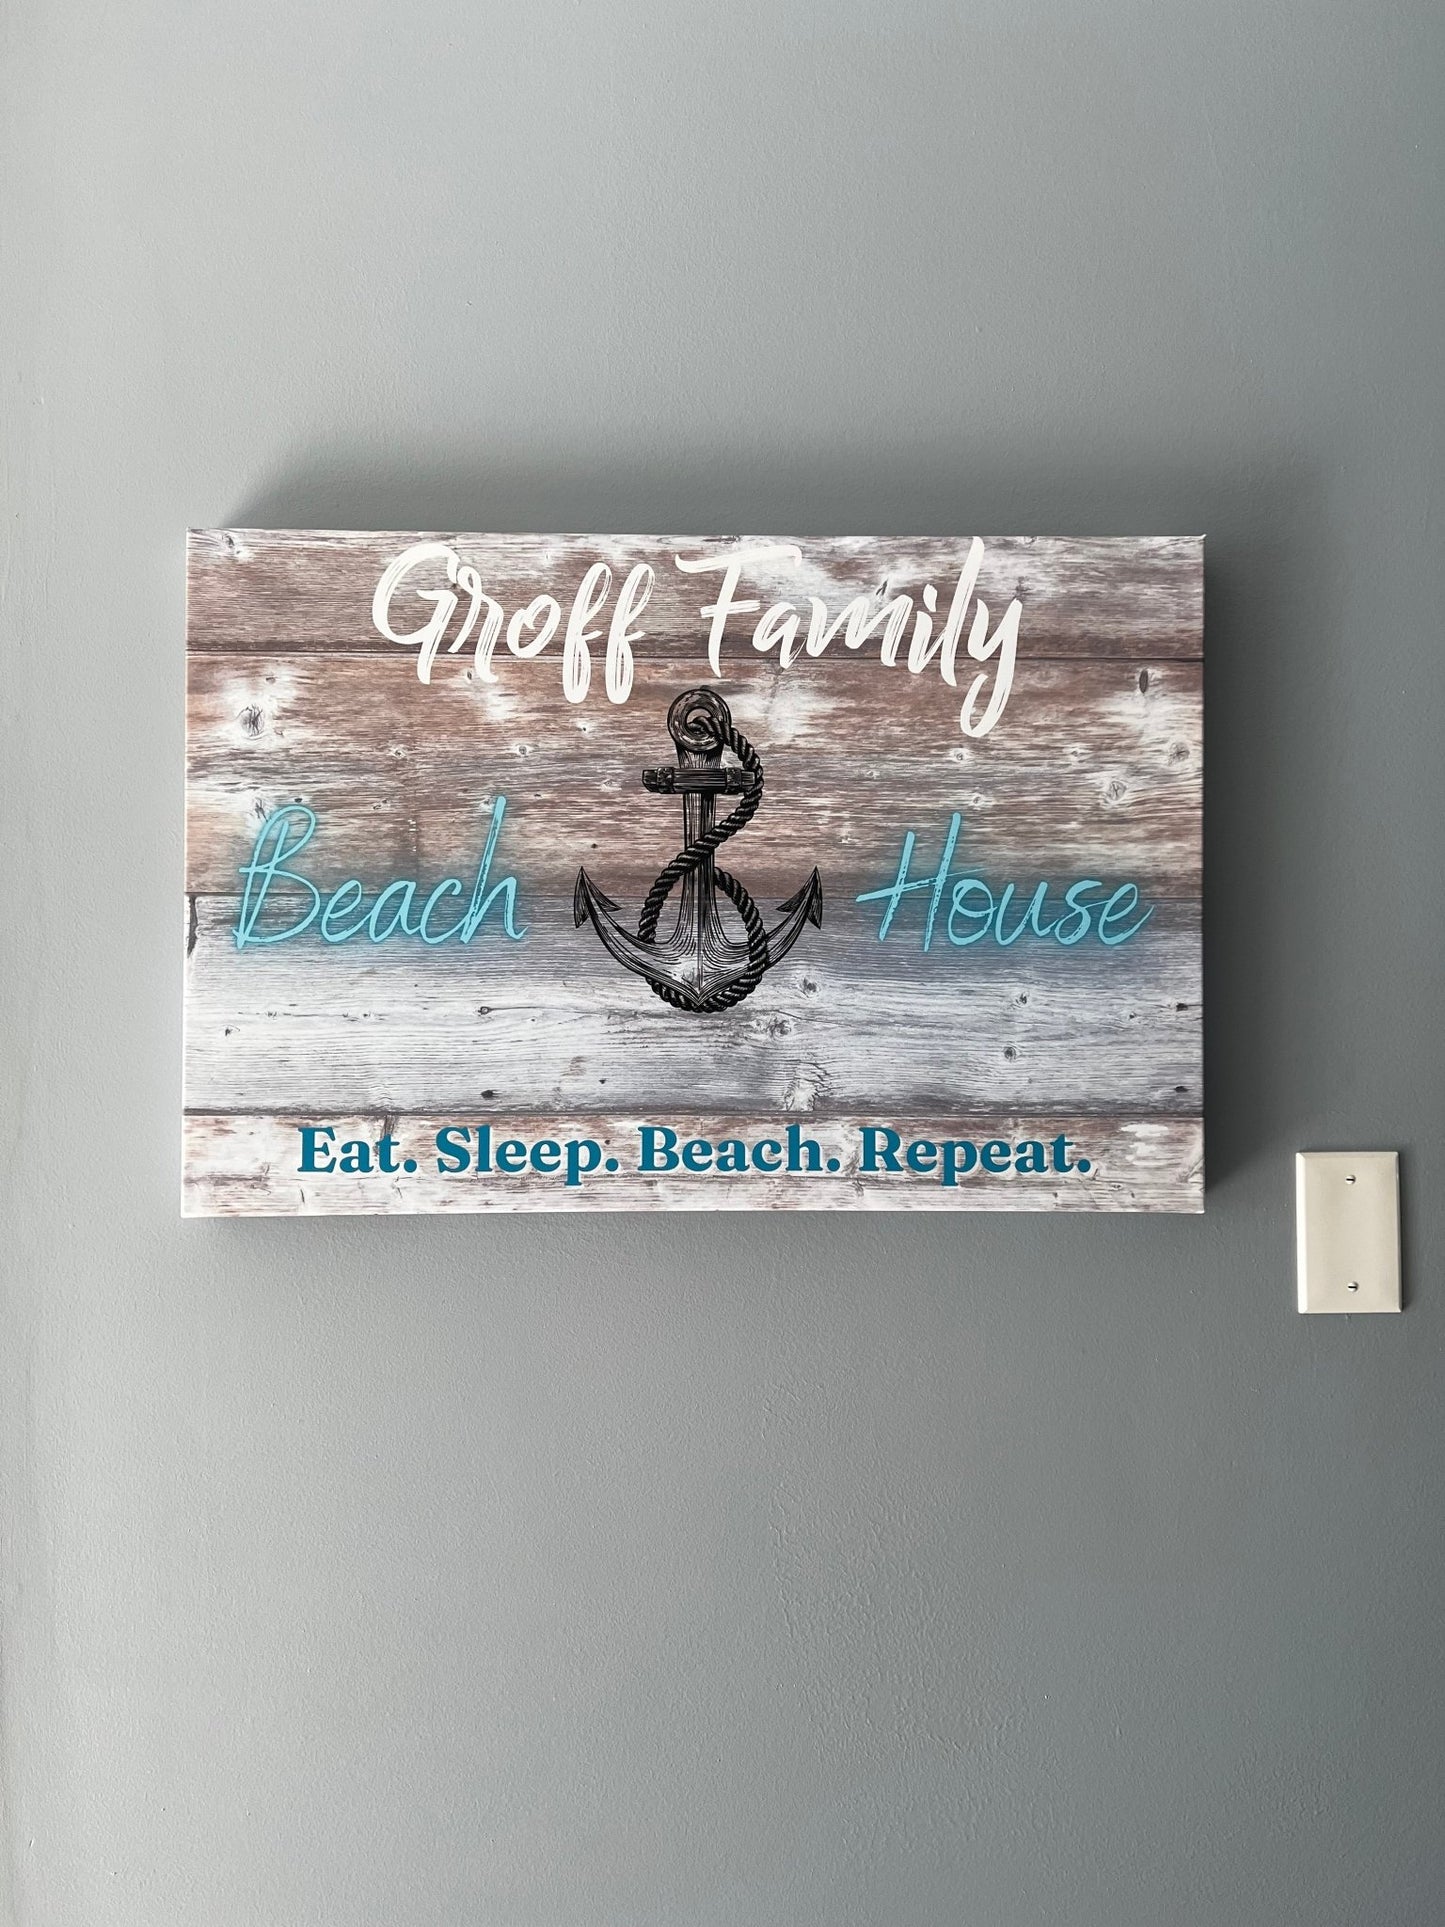 Anchor "Family Name" Beach House Sign - Creative Coastal Decor